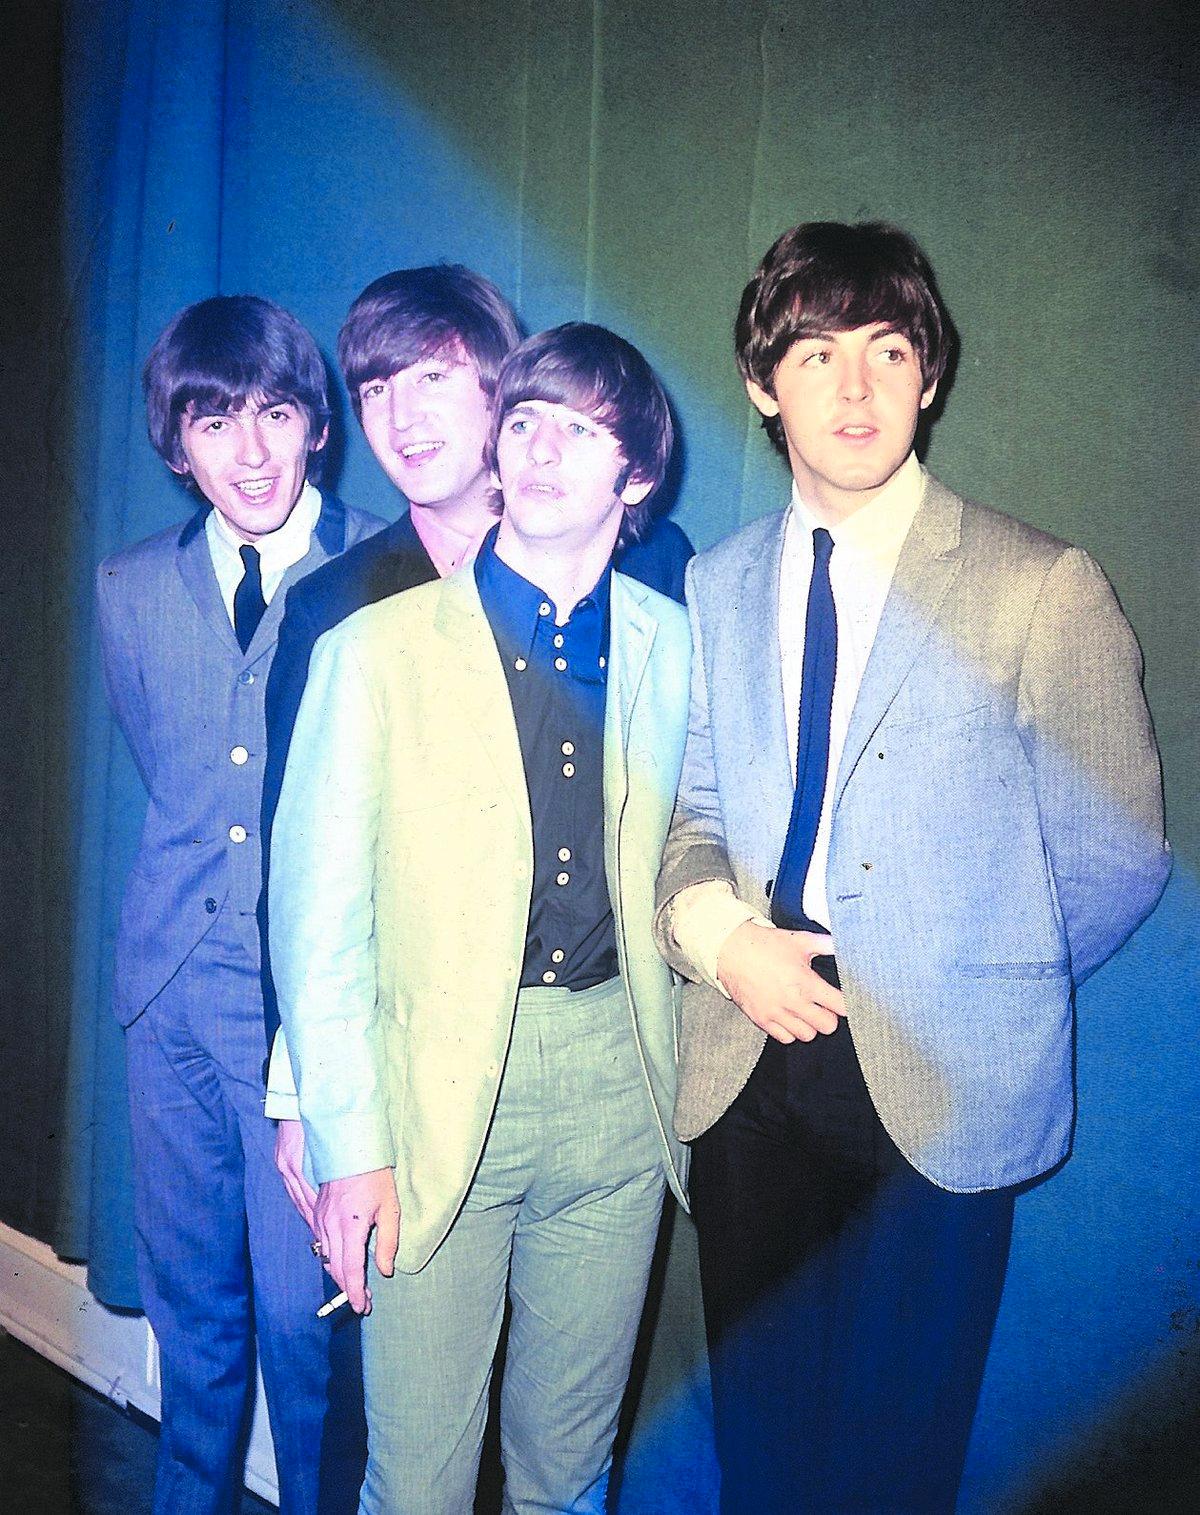 rykande heta 40 år har gått sedan George, John, Ringo och Paul splittrades. Nu går det att köpa deras låtar digitalt sedan Apple och EMI kommit överens efter sju års förhandlingar.